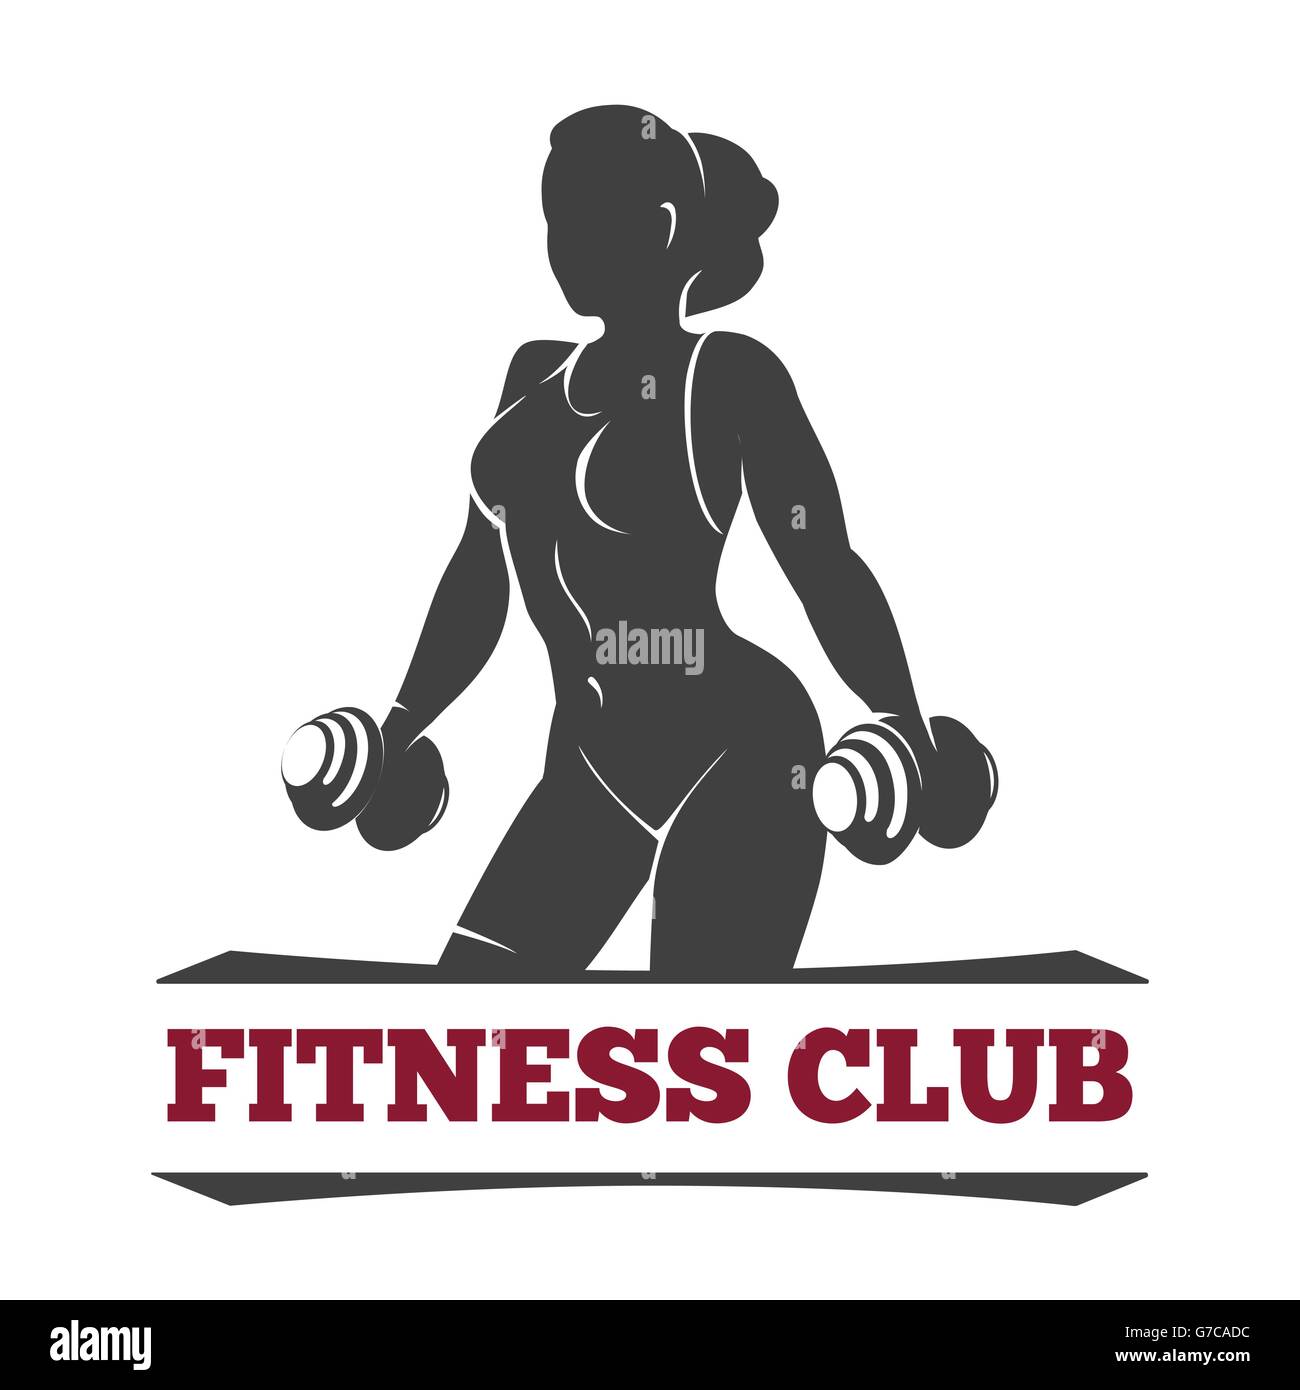 Fitness Club oder Fitness-Studio-Emblem oder Poster Design-Vorlage. Silhouette der sportlichen Frau mit Hanteln. Kostenlose Schriftart verwendet. Stock Vektor